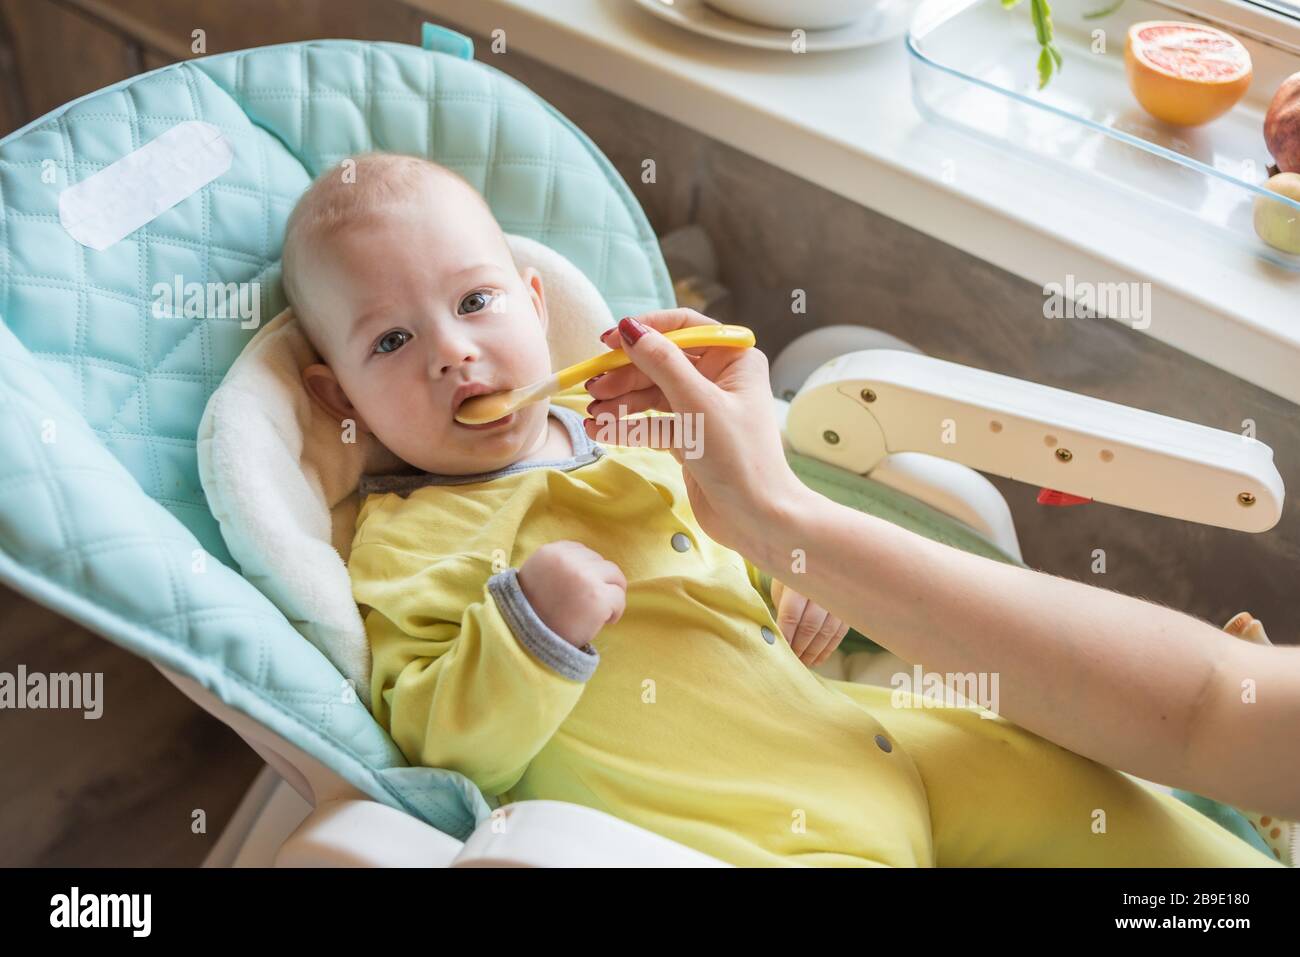 La mamma alimenta la purea di verdure del bambino in un seggiolone. La madre mette un cucchiaio di schiacciamento nella bocca del bambino. Il bambino mangia cibo. Foto Stock